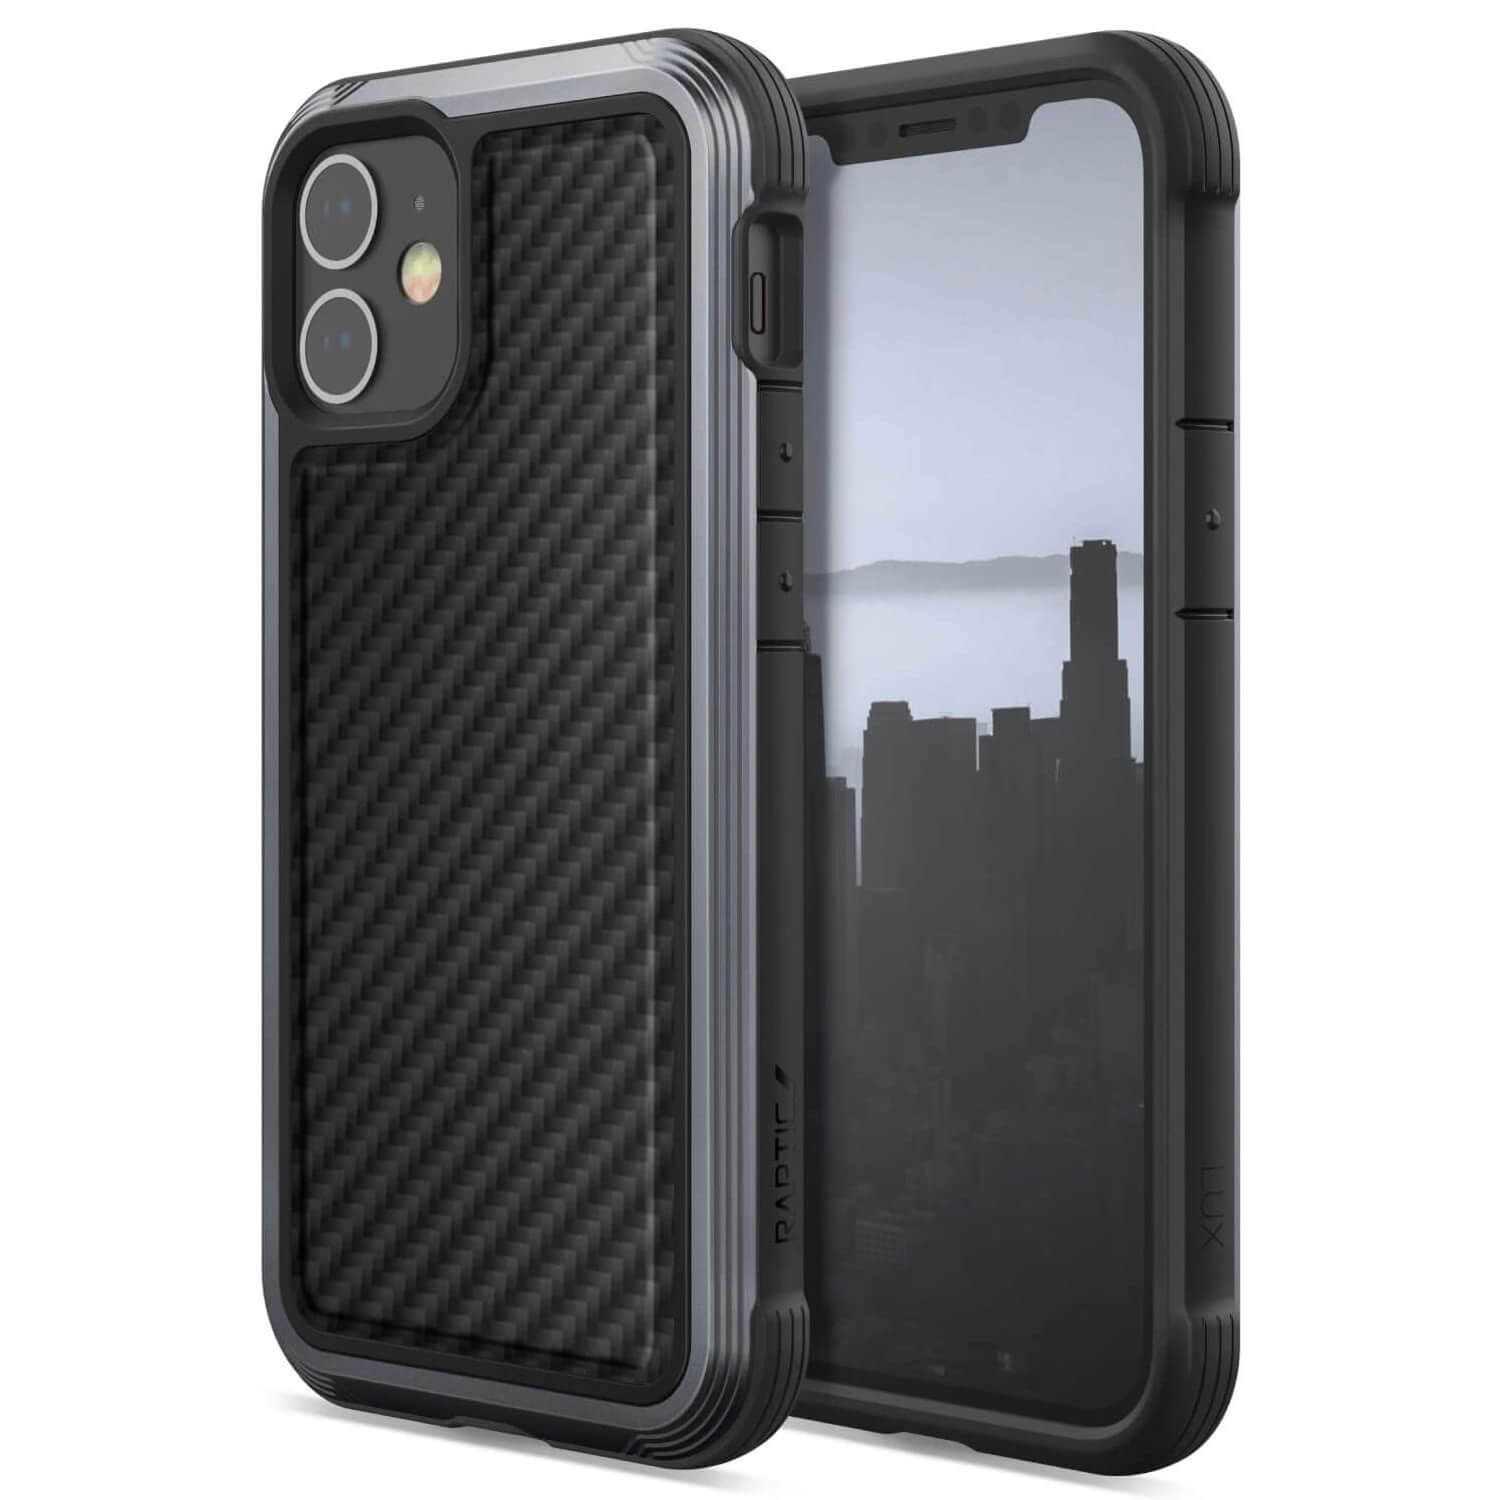 X-doria iPhone 12 mini Case Raptic Lux Black Carbon Fiber